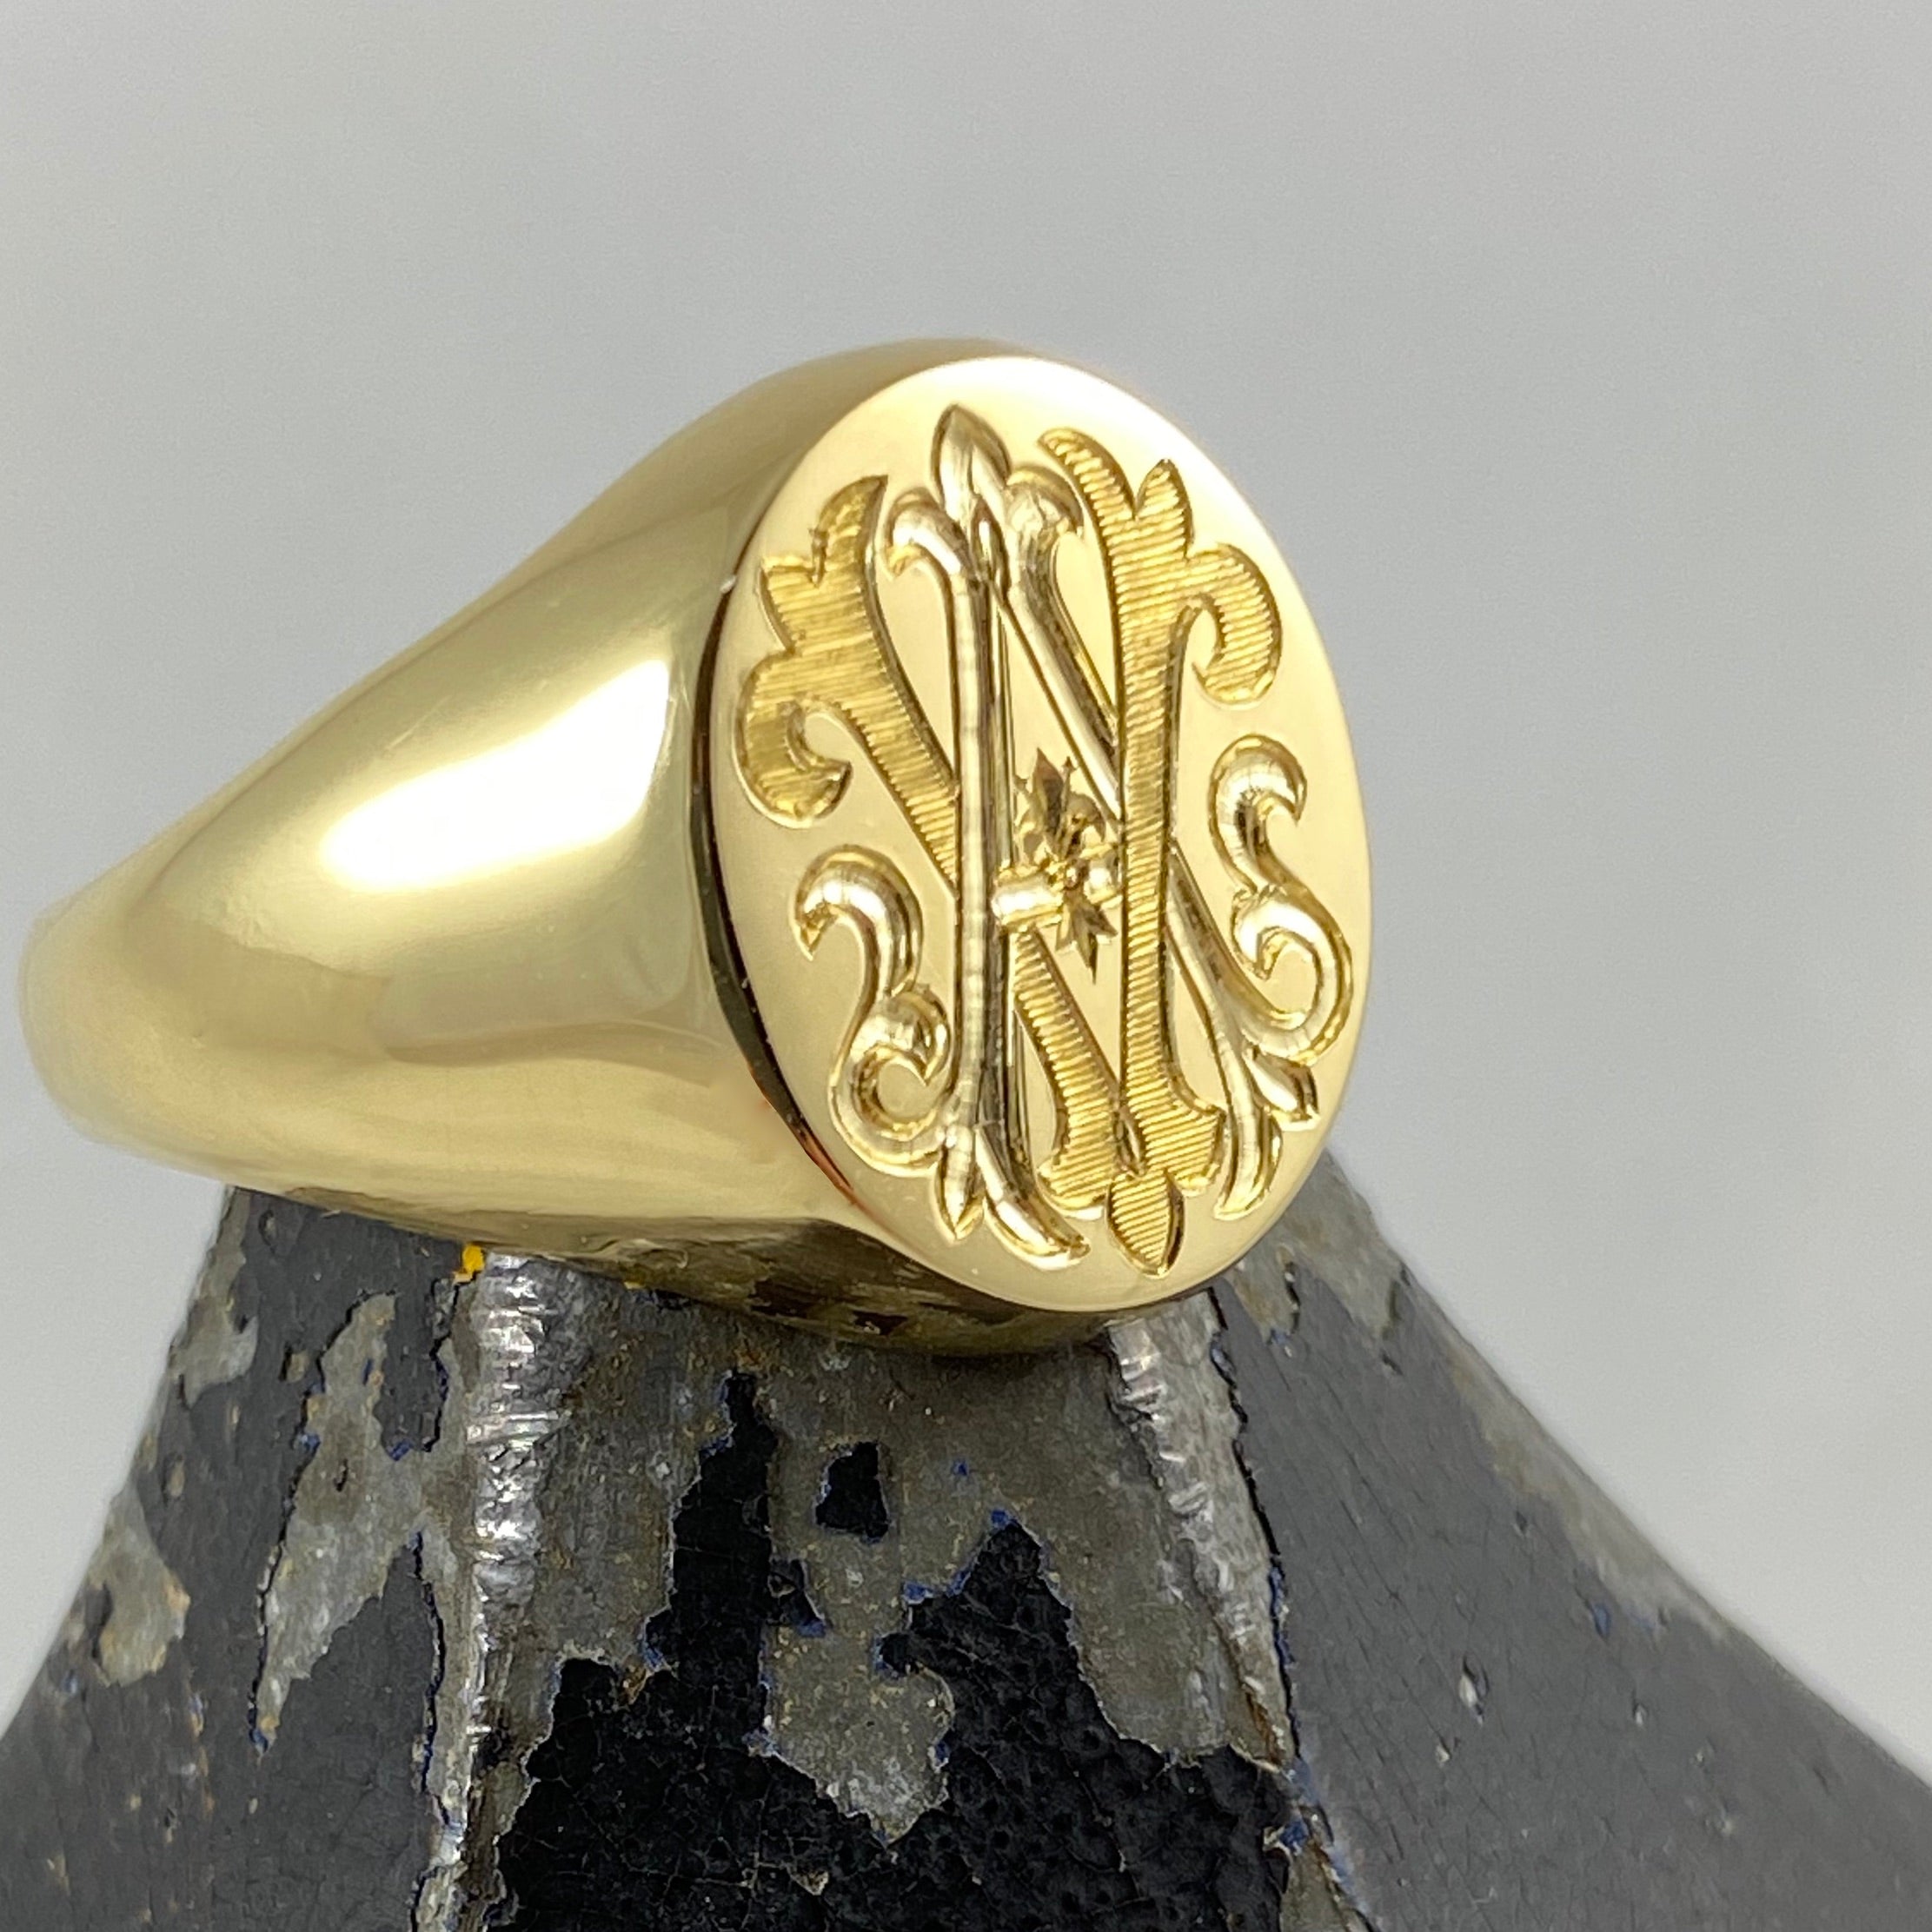 Monogram Engraved 16mm X 13mm 18 Carat Yellow Gold Signet Ring | Free ...